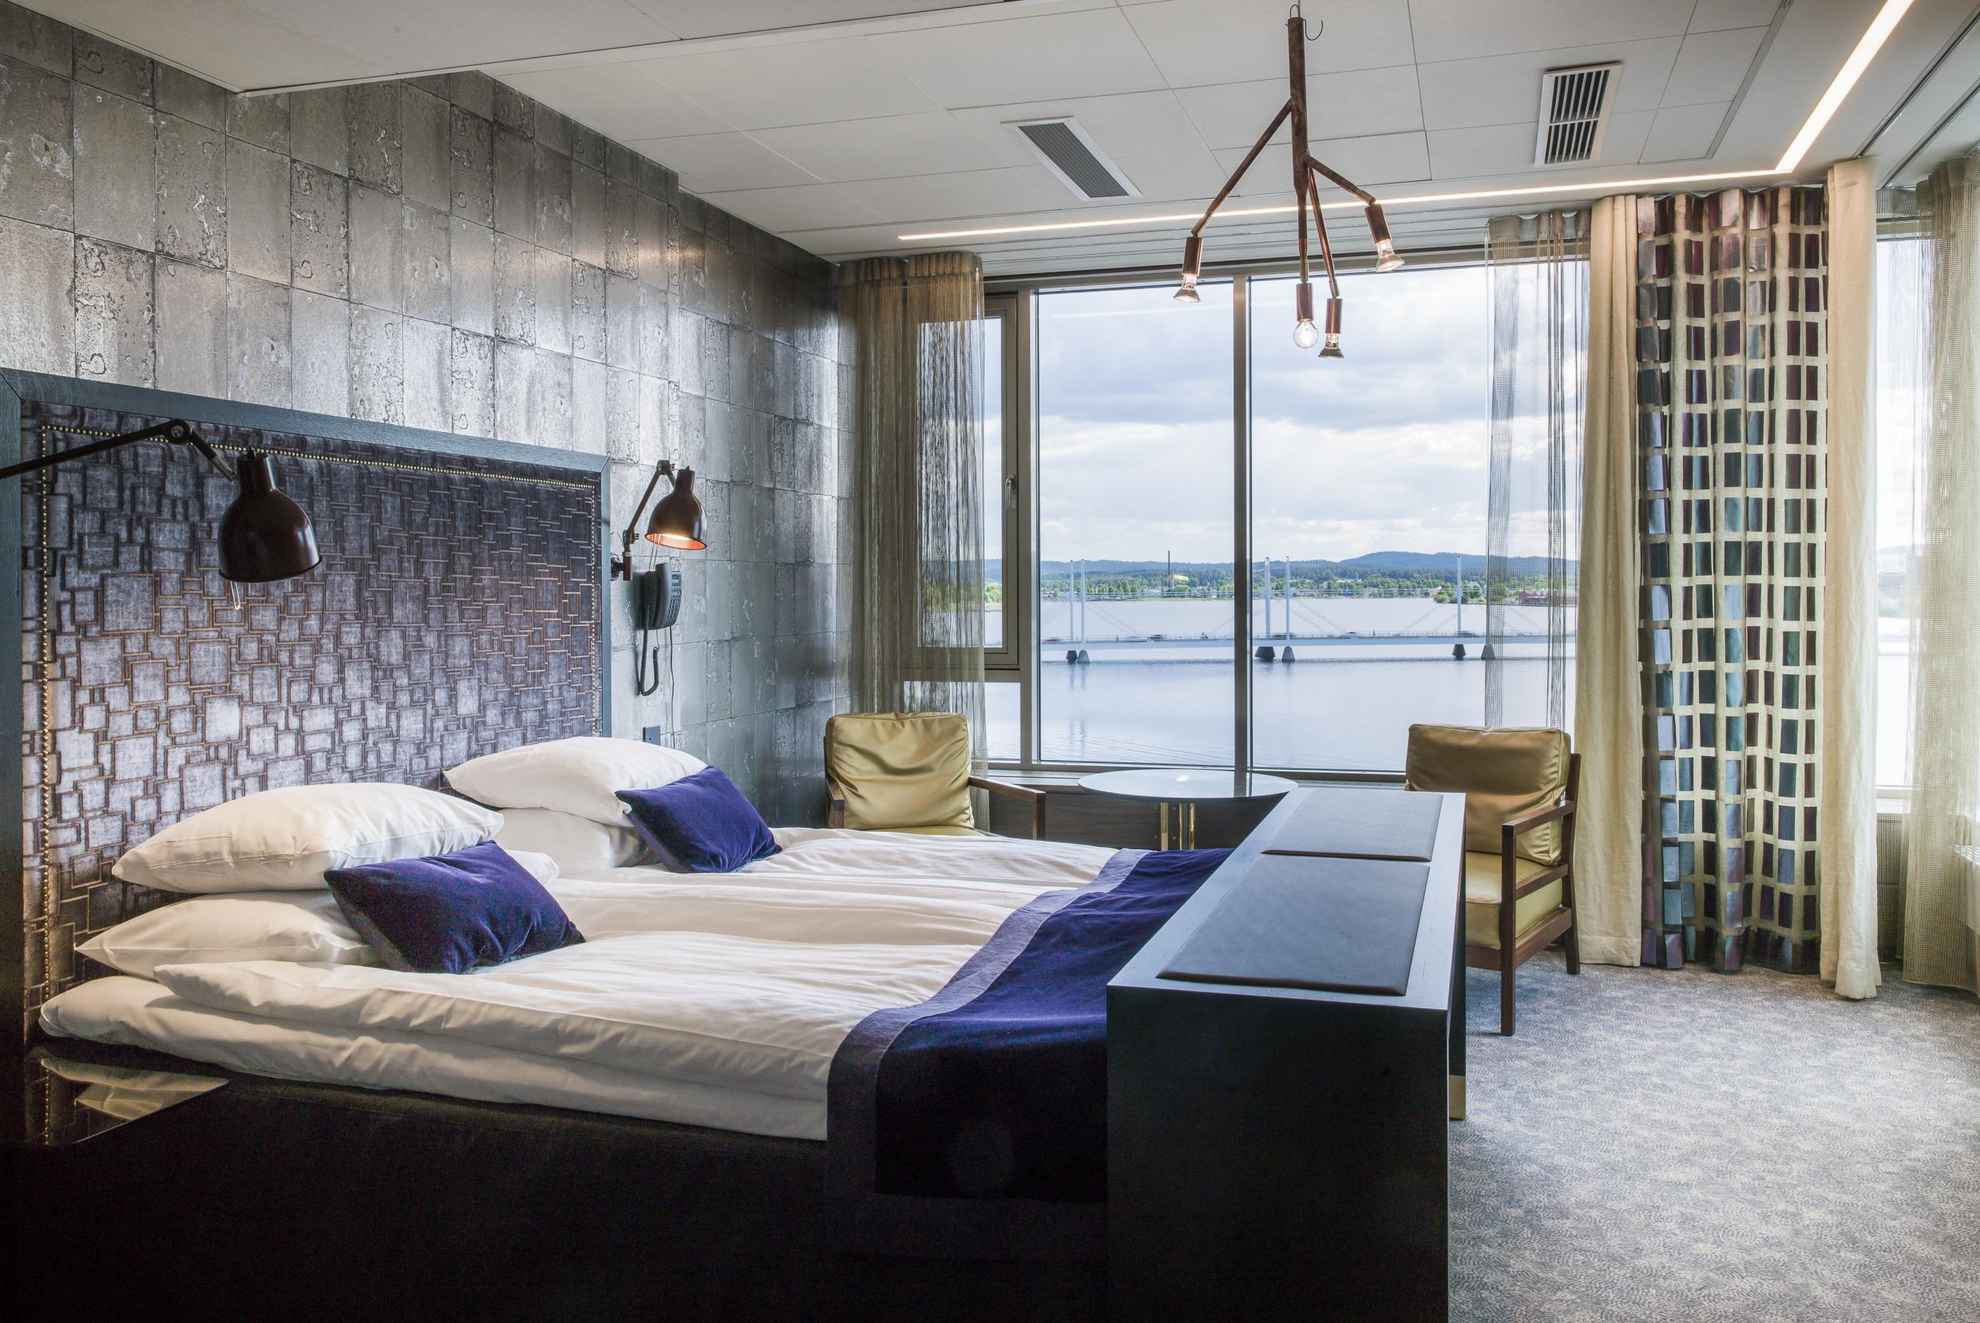 Een hotelkamer met uitzicht op een meer in de zomer. De kamer heeft een tweepersoonsbed, een kleine ronde tafel en twee stoelen.